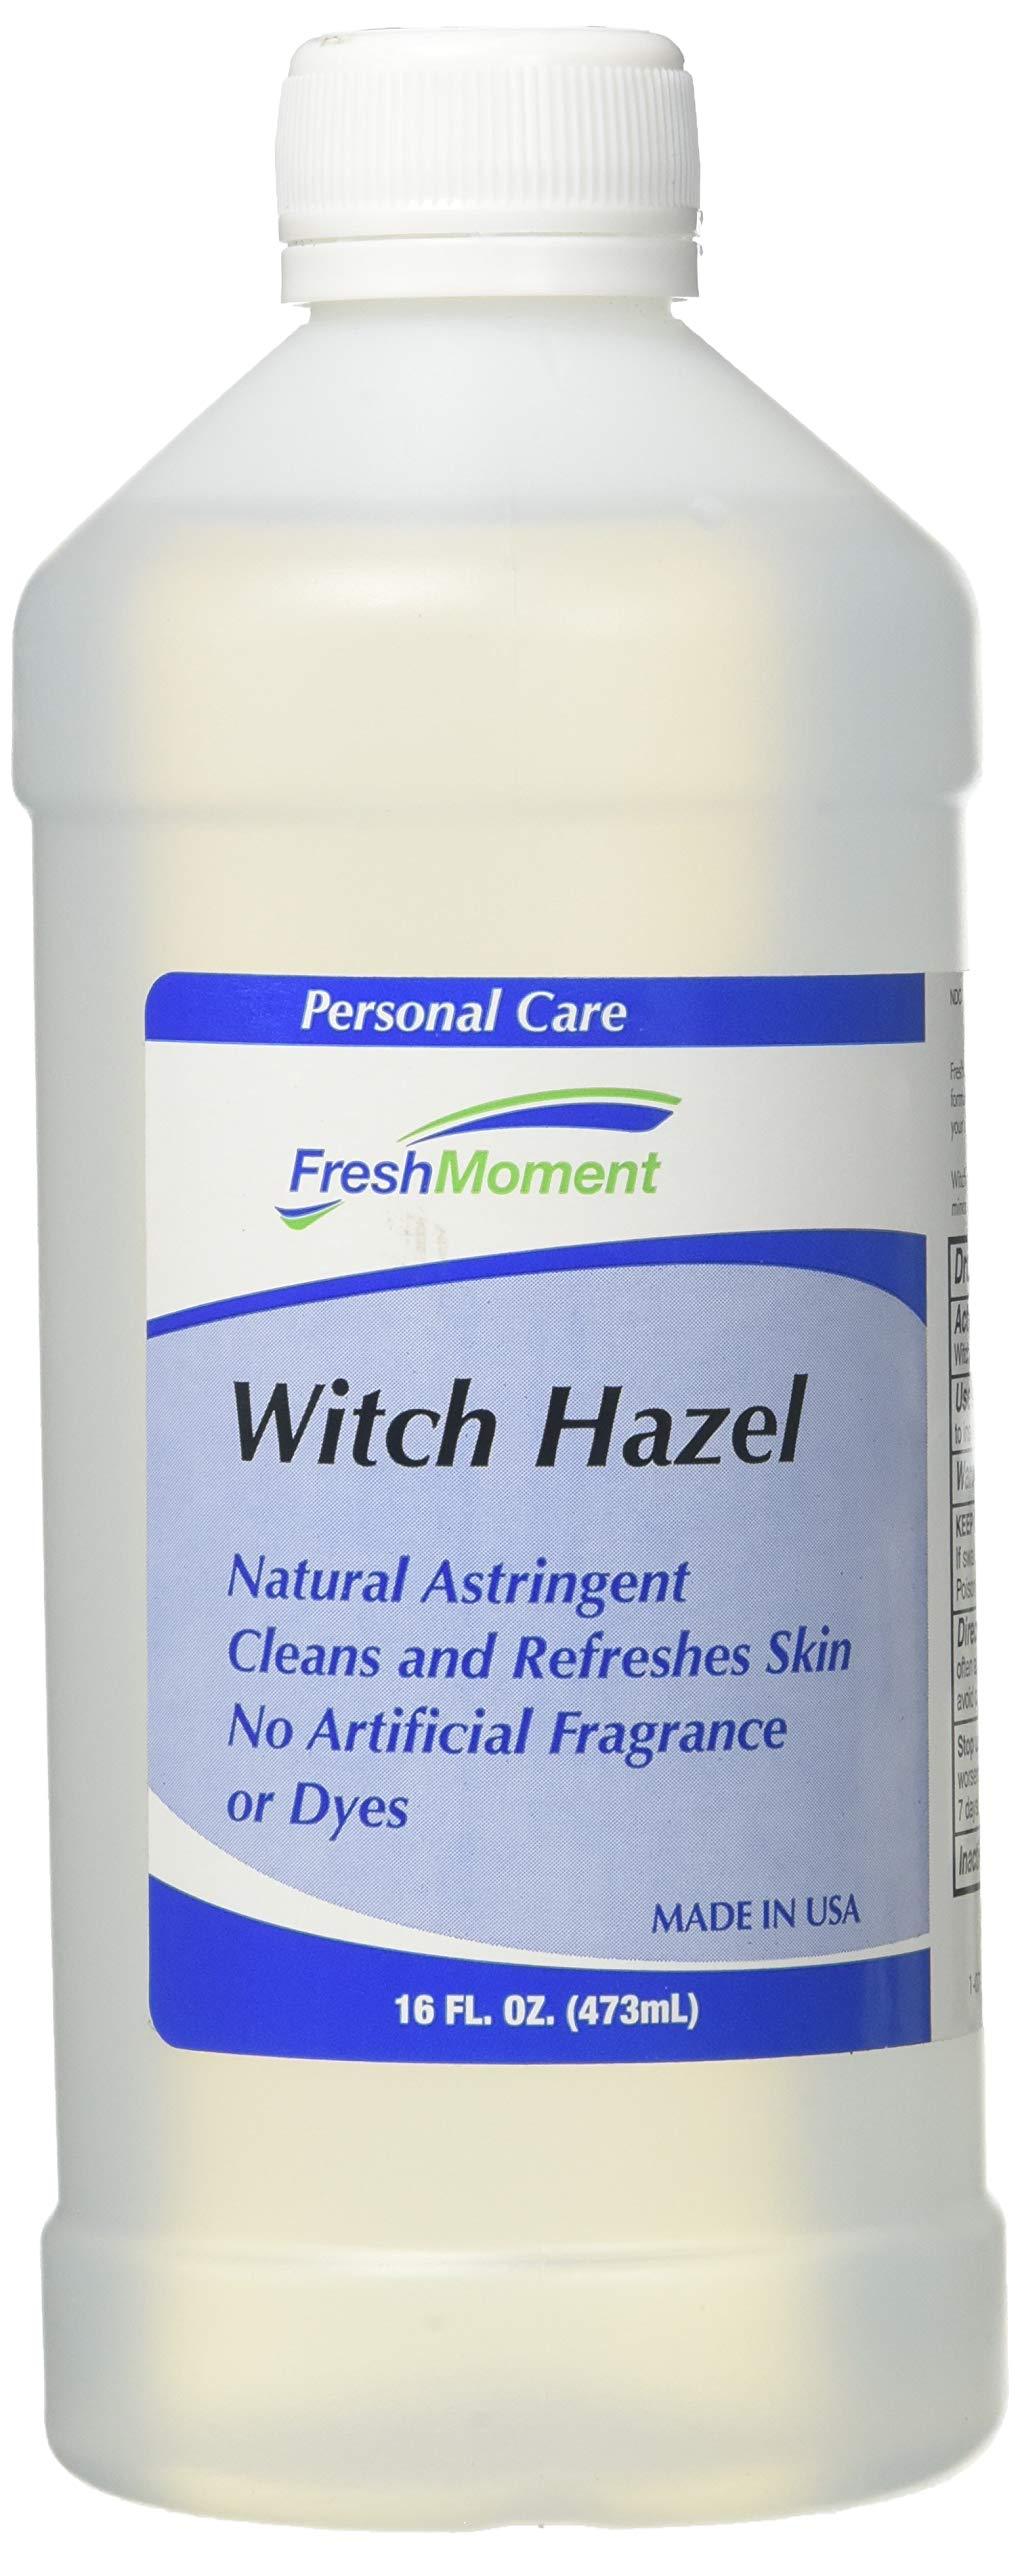 [Australia] - Witch Hazel Natural Astringent - 16oz. Bottle 